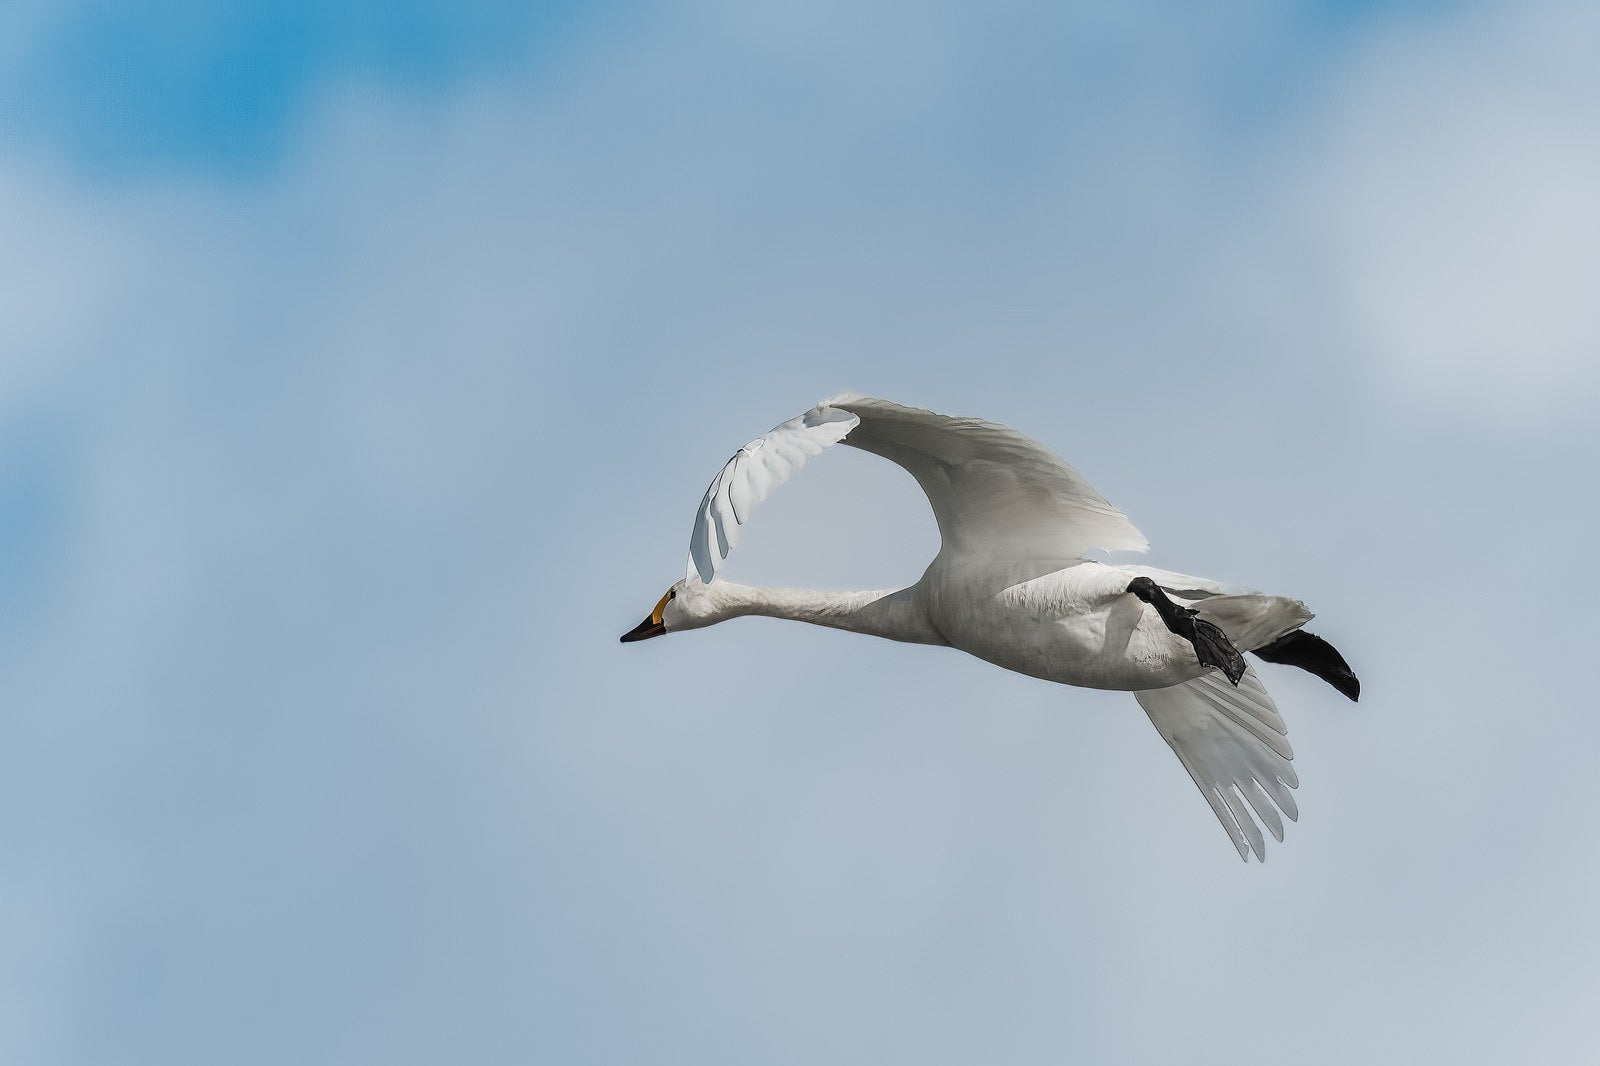 「猪苗代湖に響く白鳥の飛行の旋律」の写真